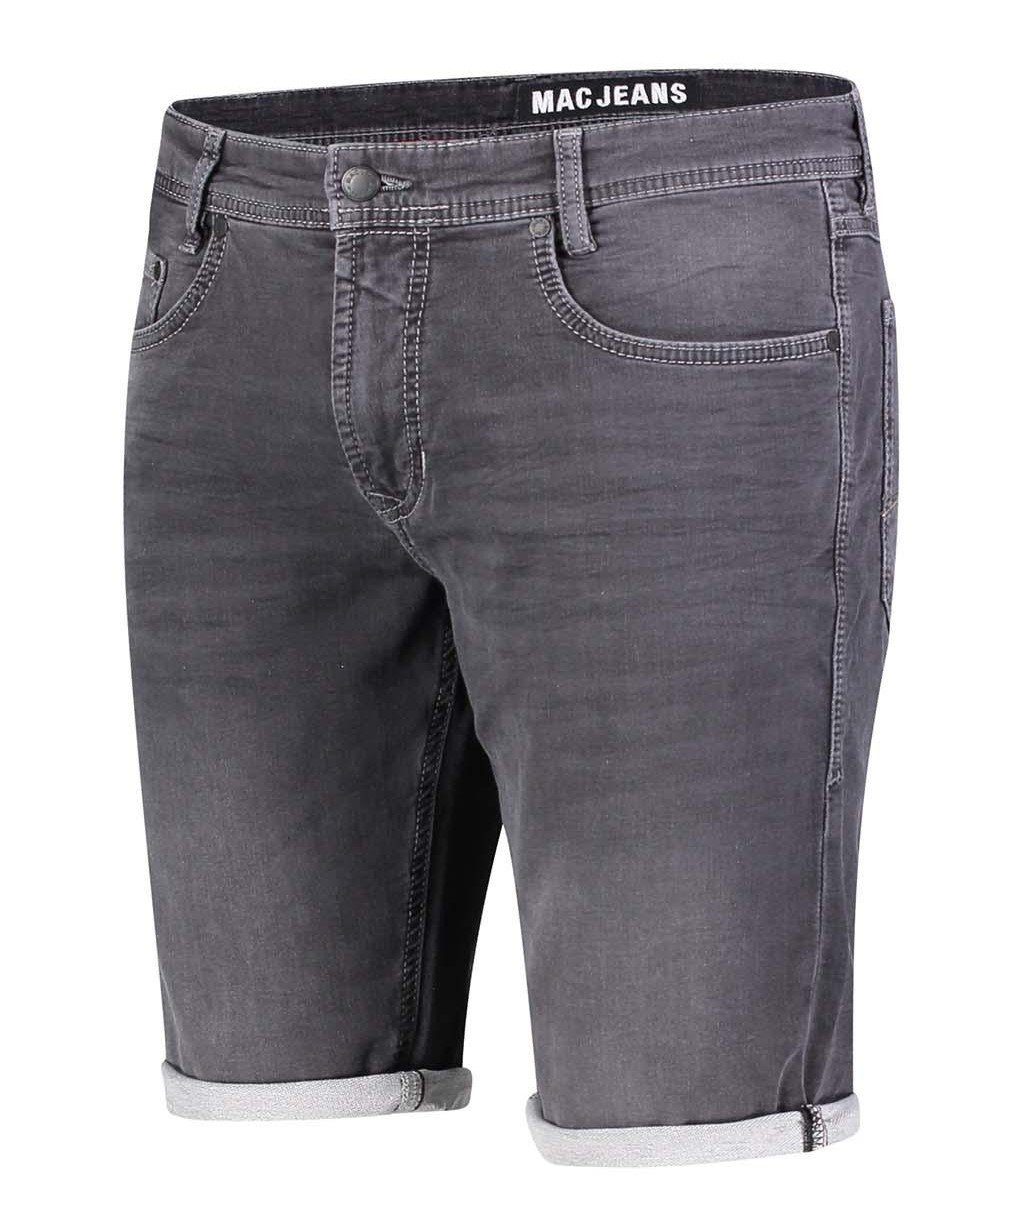 JOG'N BERMUDA grey dusty H830 MAC 5-Pocket-Jeans MAC grey 0562-00-0994L-H830